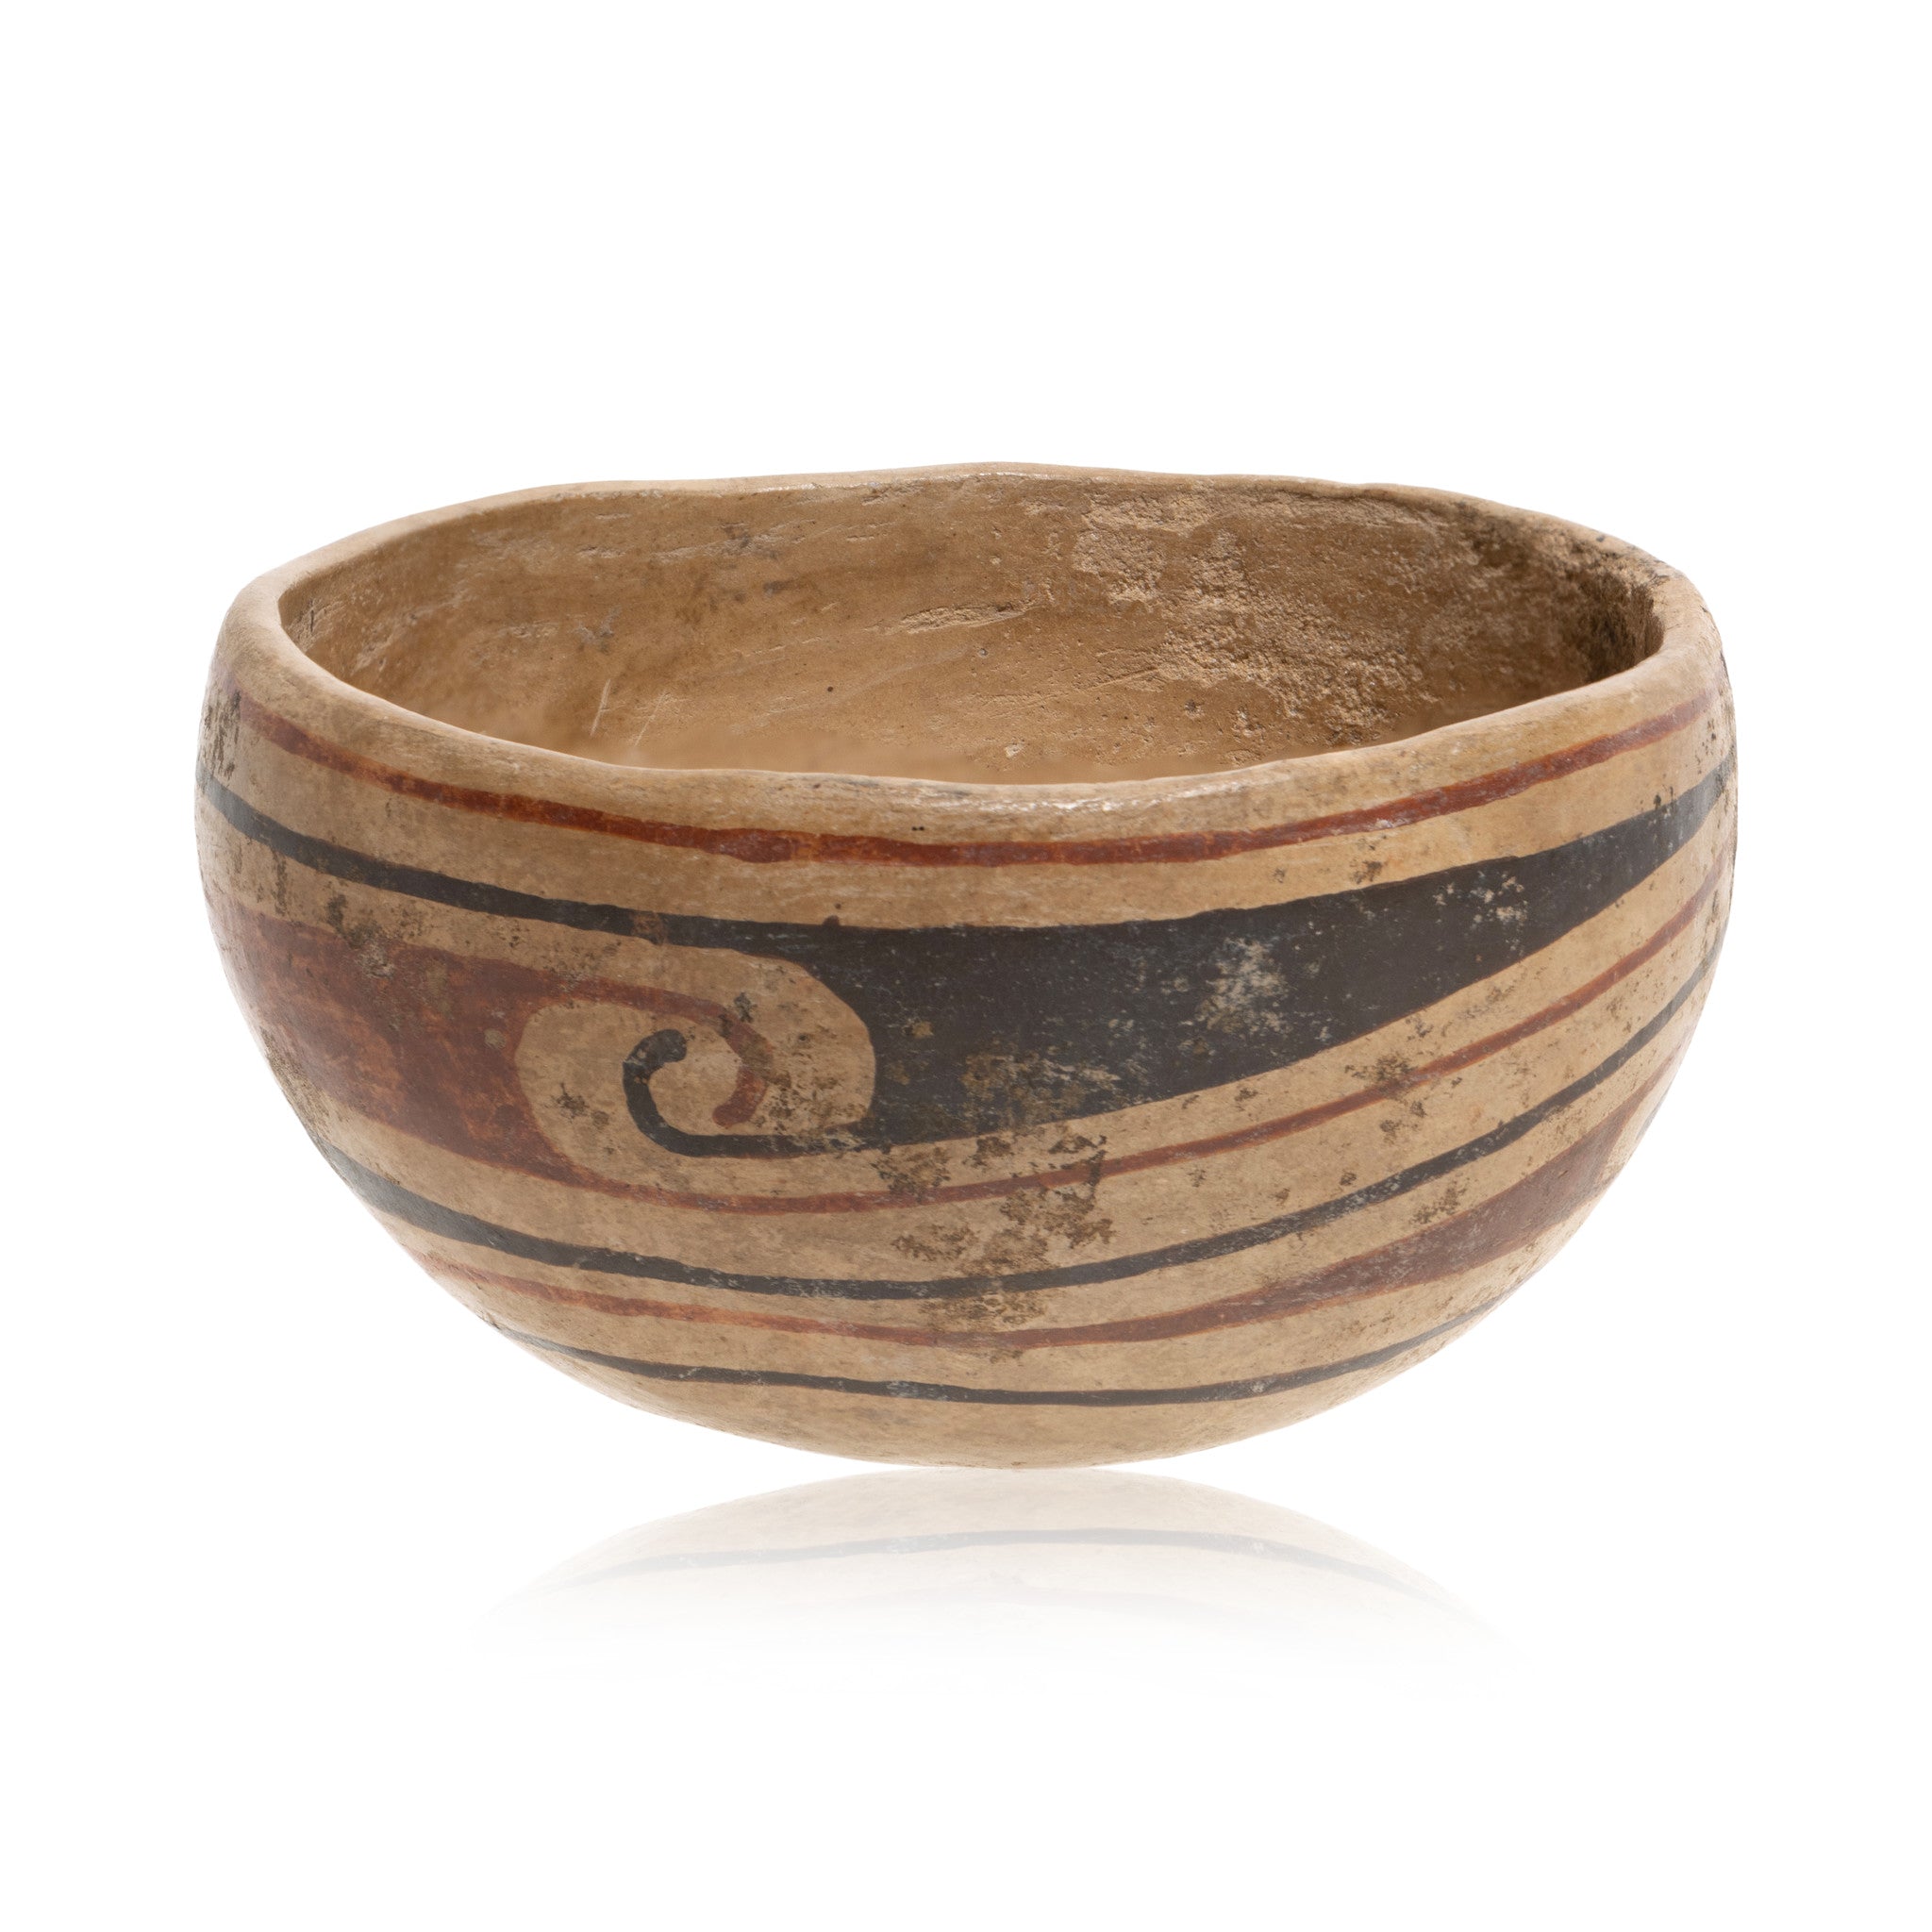 Ramos Pottery Bowl, Native, Pottery, Prehistoric